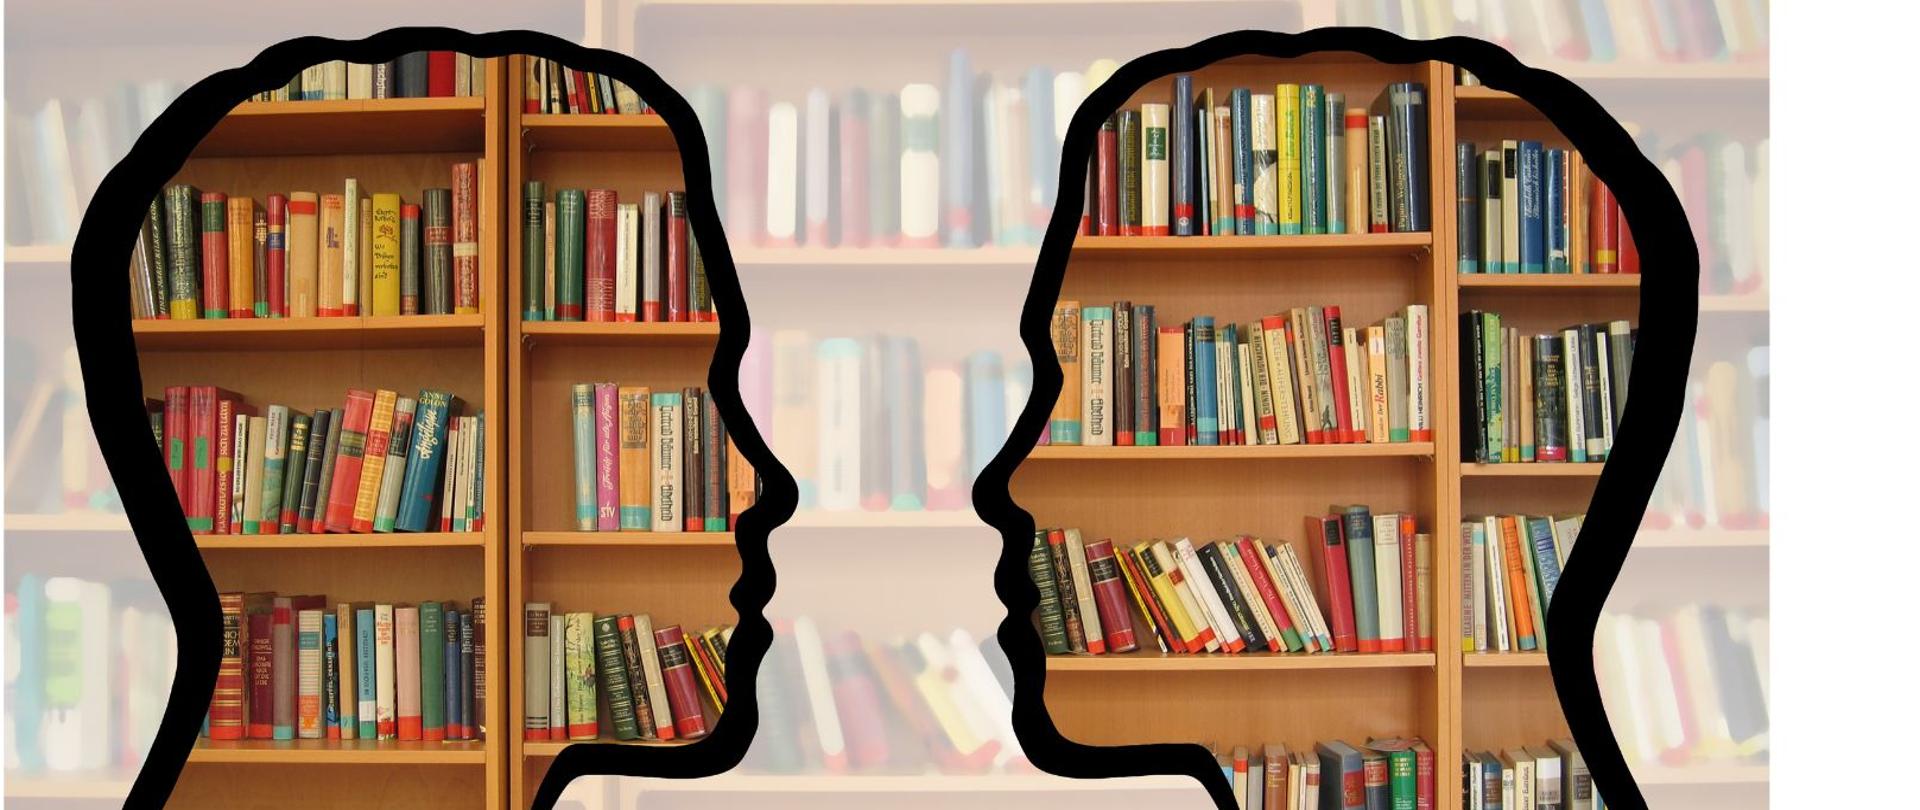 Grafika przedstawia zdjęcie regałów bibliotecznych zapełnionych książkami objętych w czarne kontury w kształcie męskich profili zwróconych do siebie